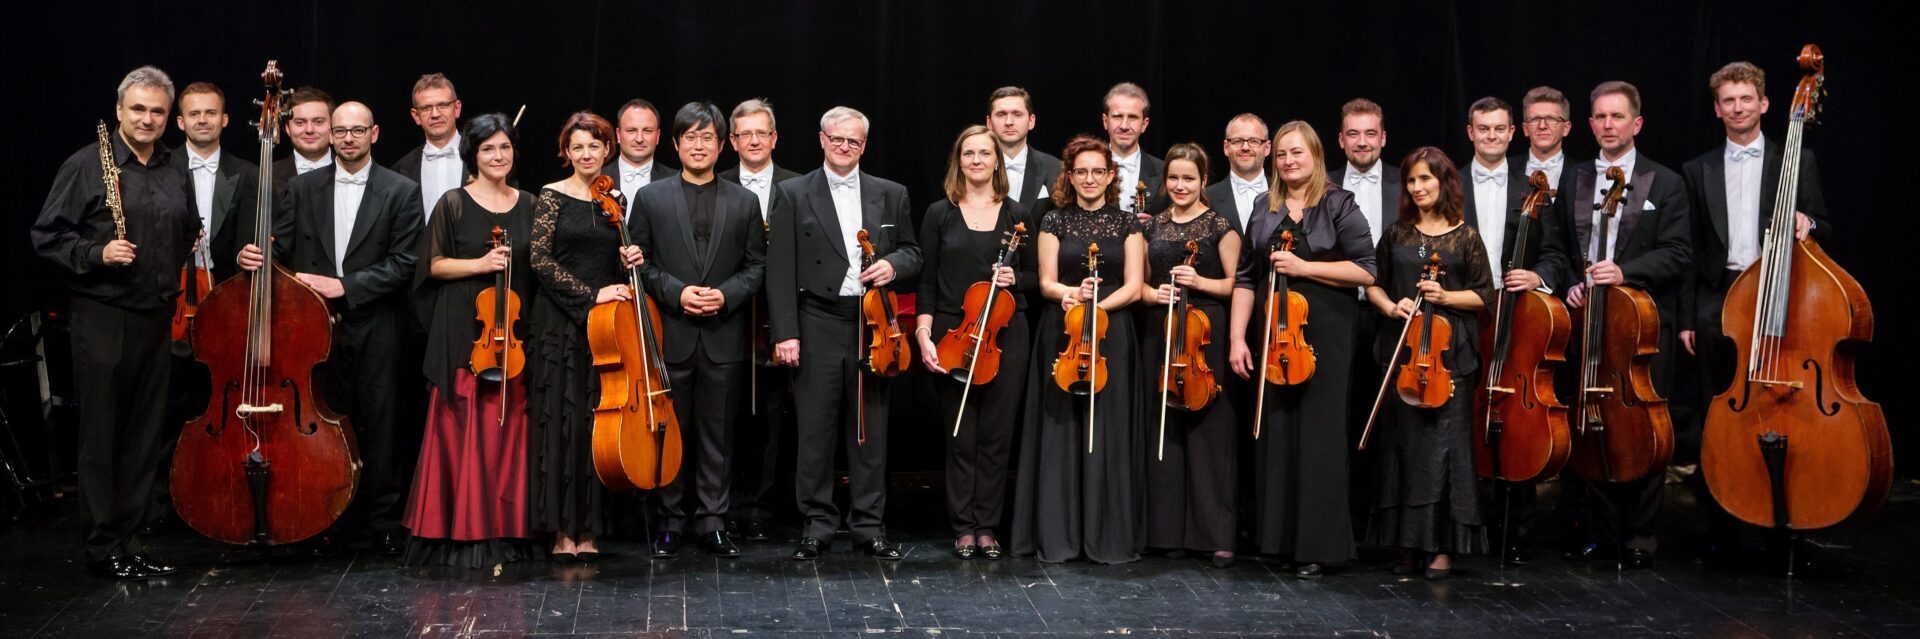 zdjęcie prezentujące muzyków Gliwickiej Orkiestry Kameralnej stojących na scenie. Wszyscy elegancko ubrani z instrumentami w rękach.